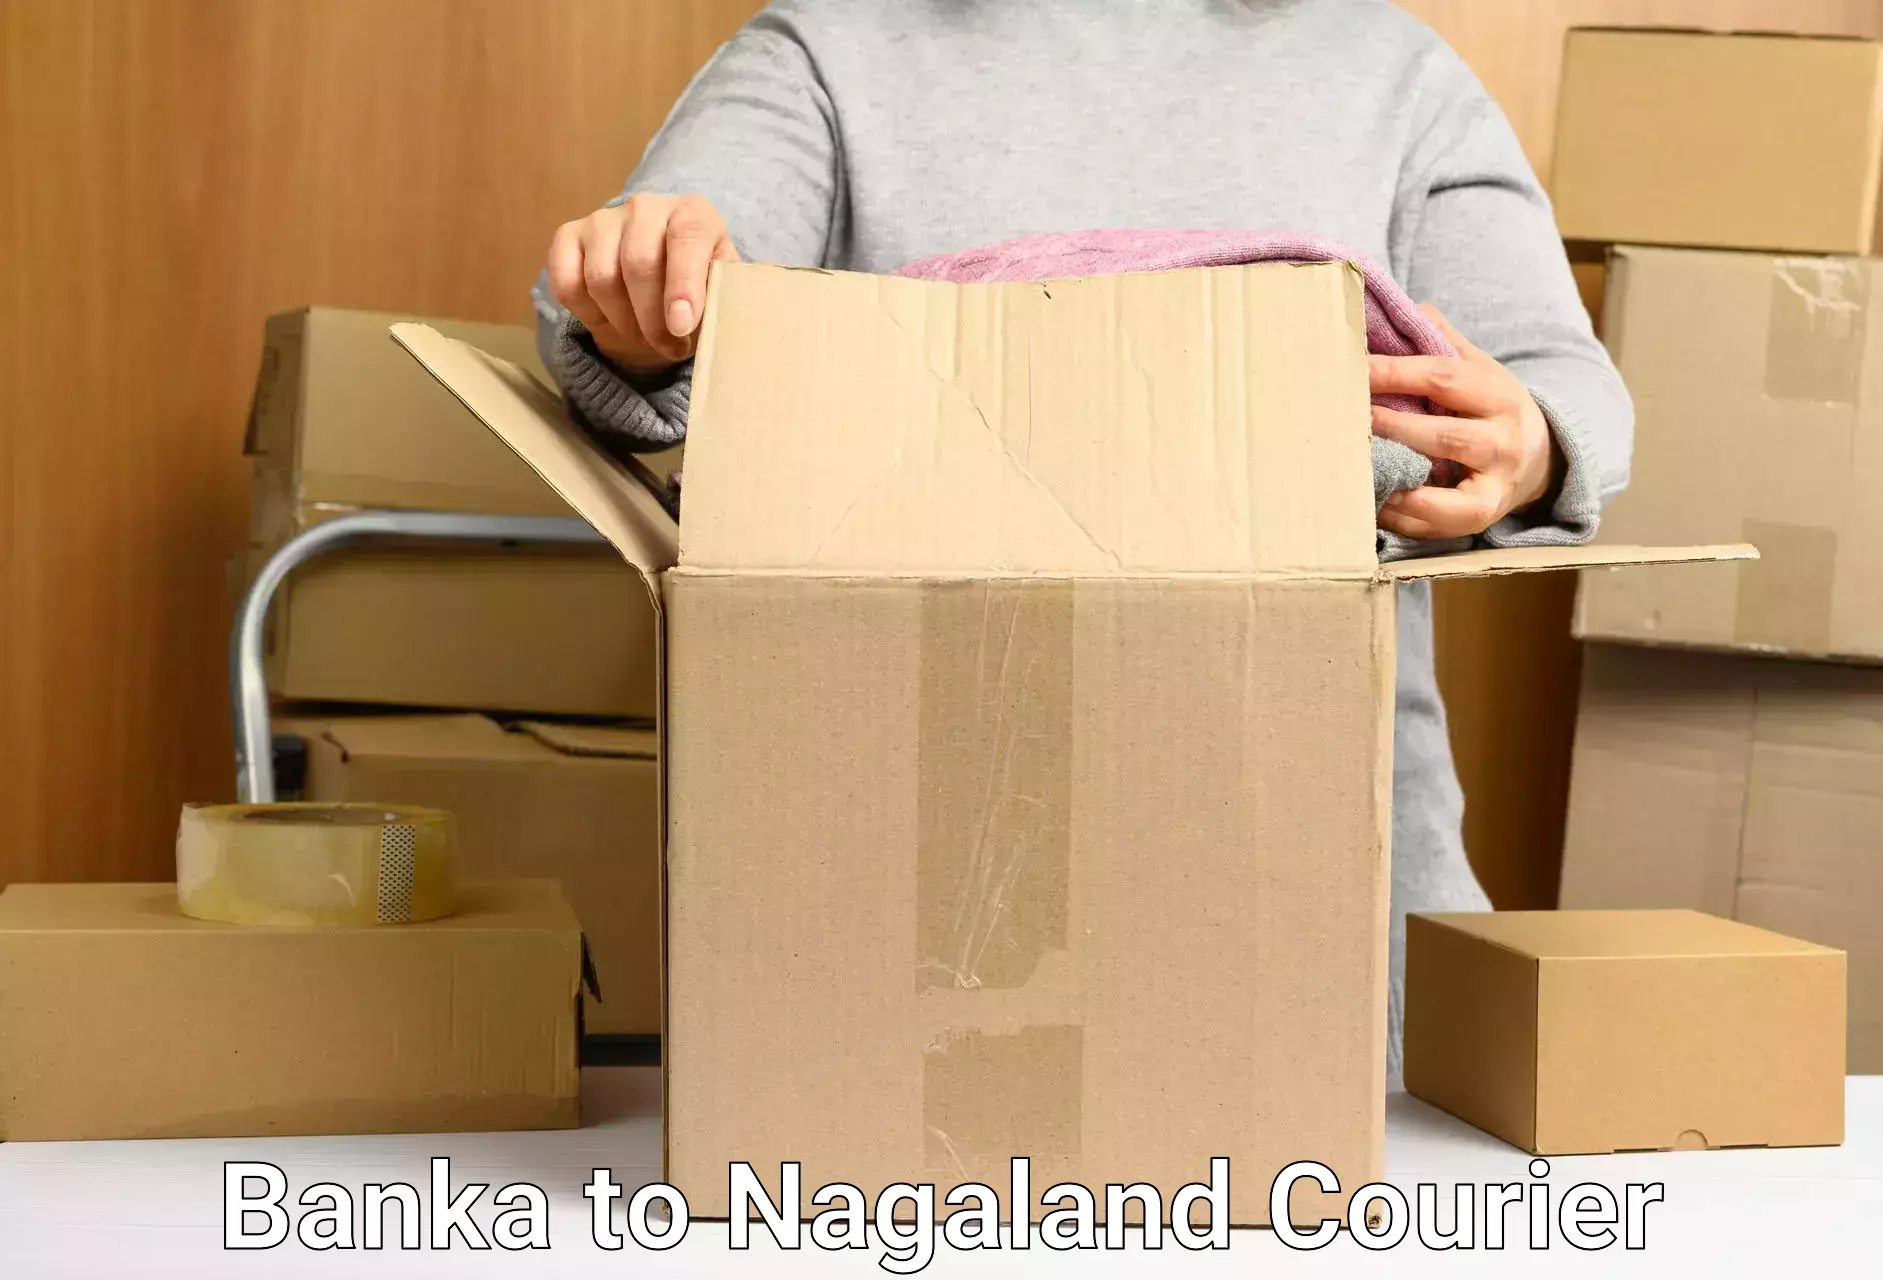 Individual parcel service Banka to NIT Nagaland